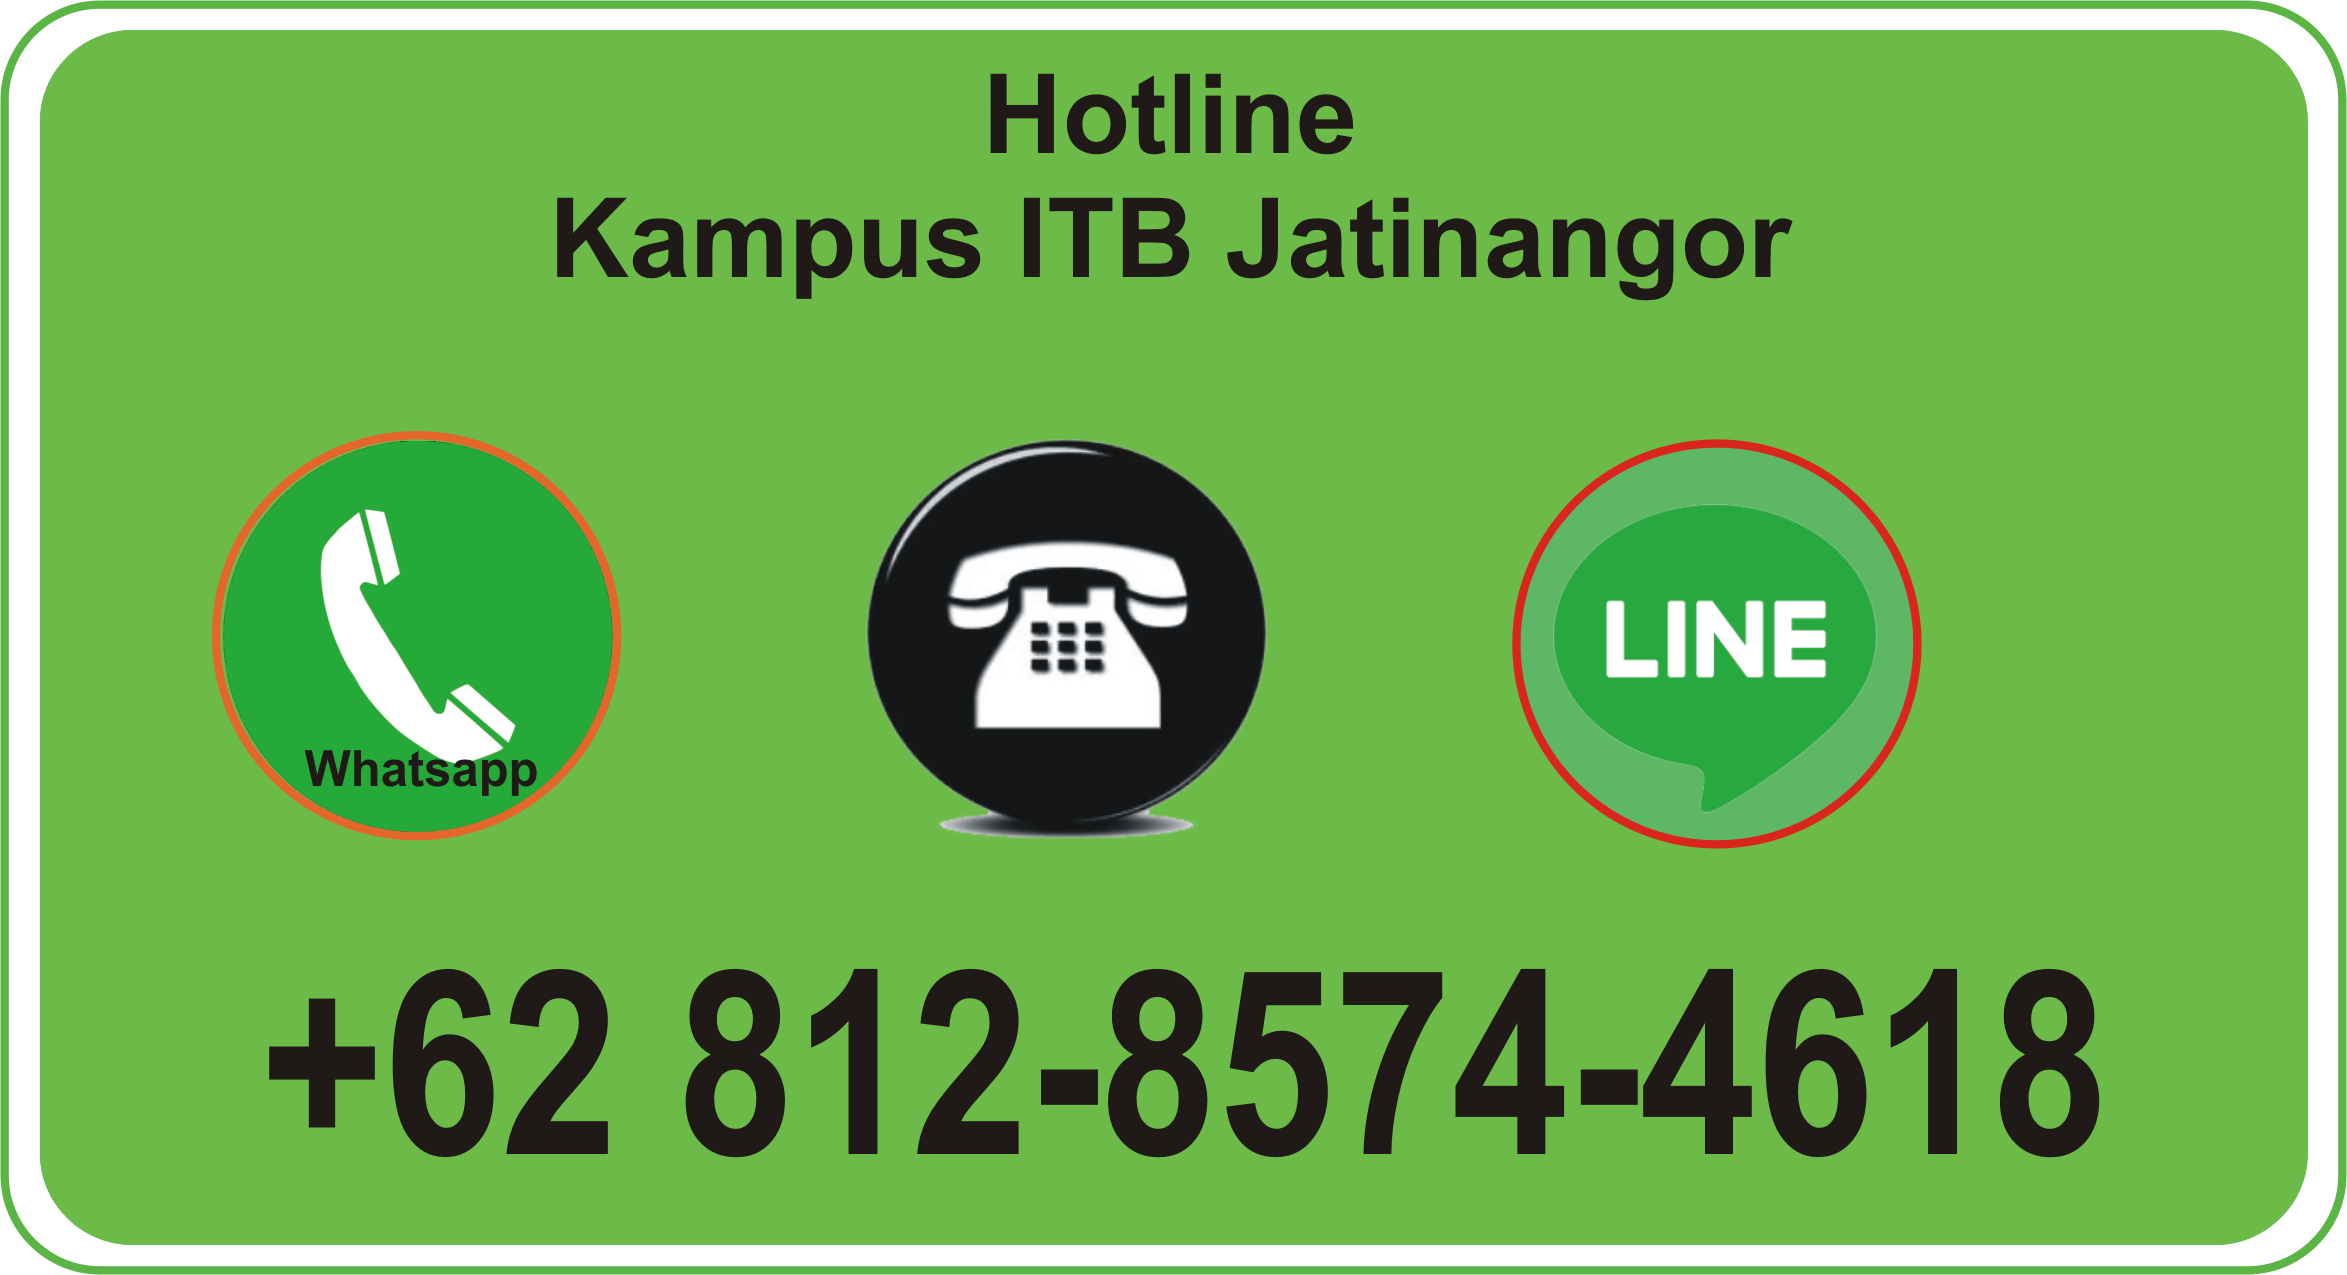 (Indonesia) Hotline Kampus ITB Jatinangor